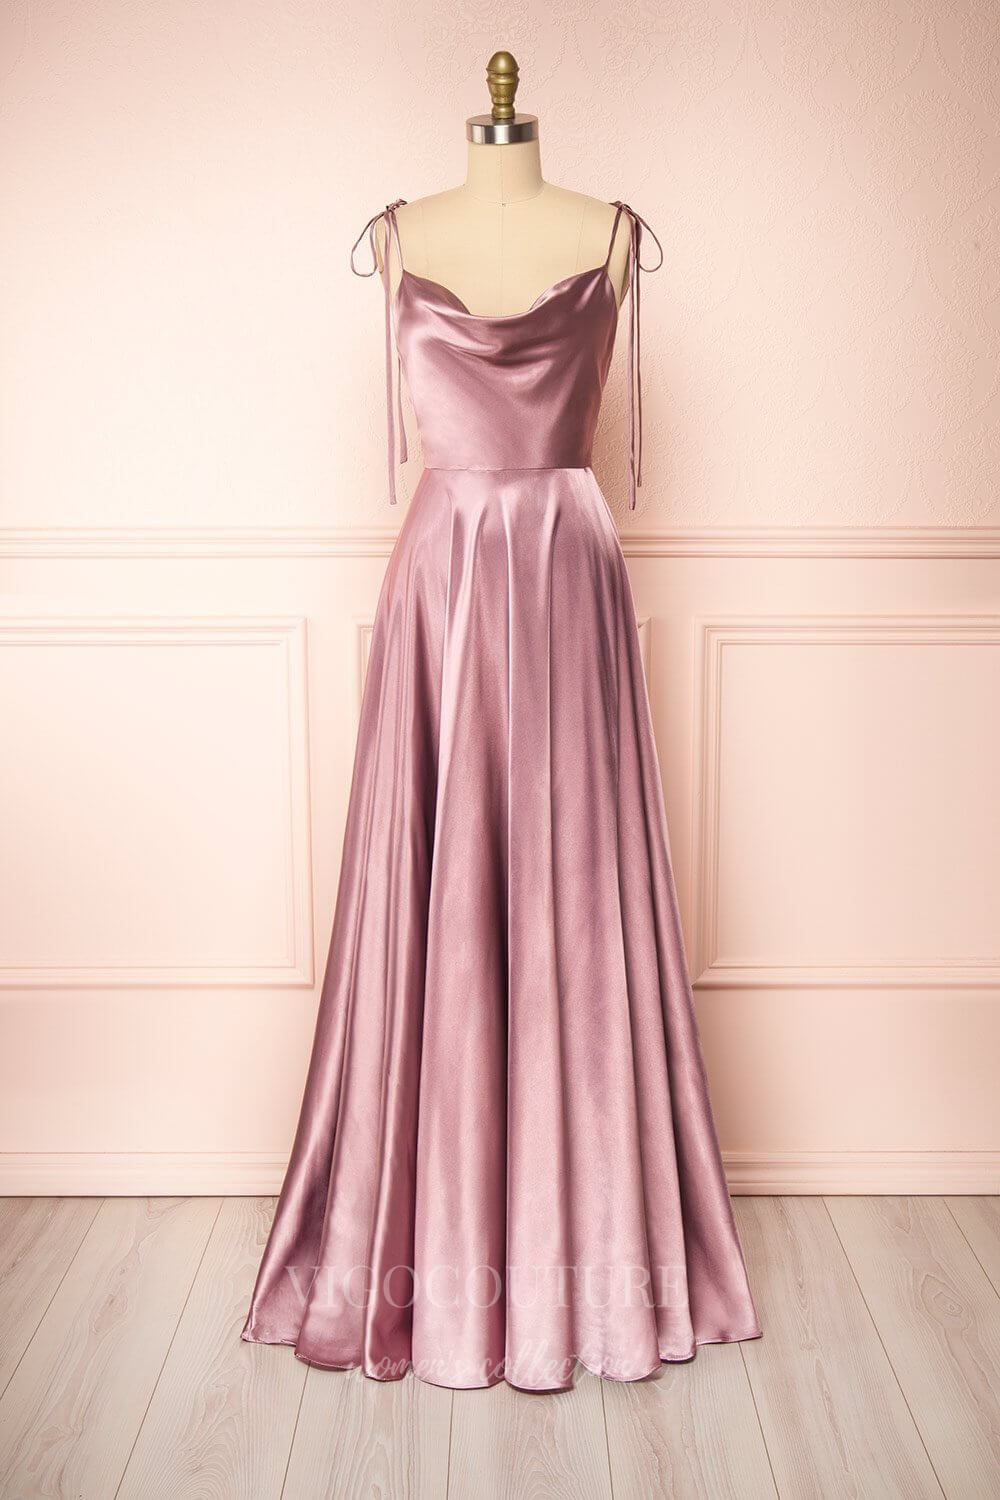 vigocouture-Dusty Pink Spaghetti Strap Prom Dress 20578-Prom Dresses-vigocouture-Dusty Pink-US2-